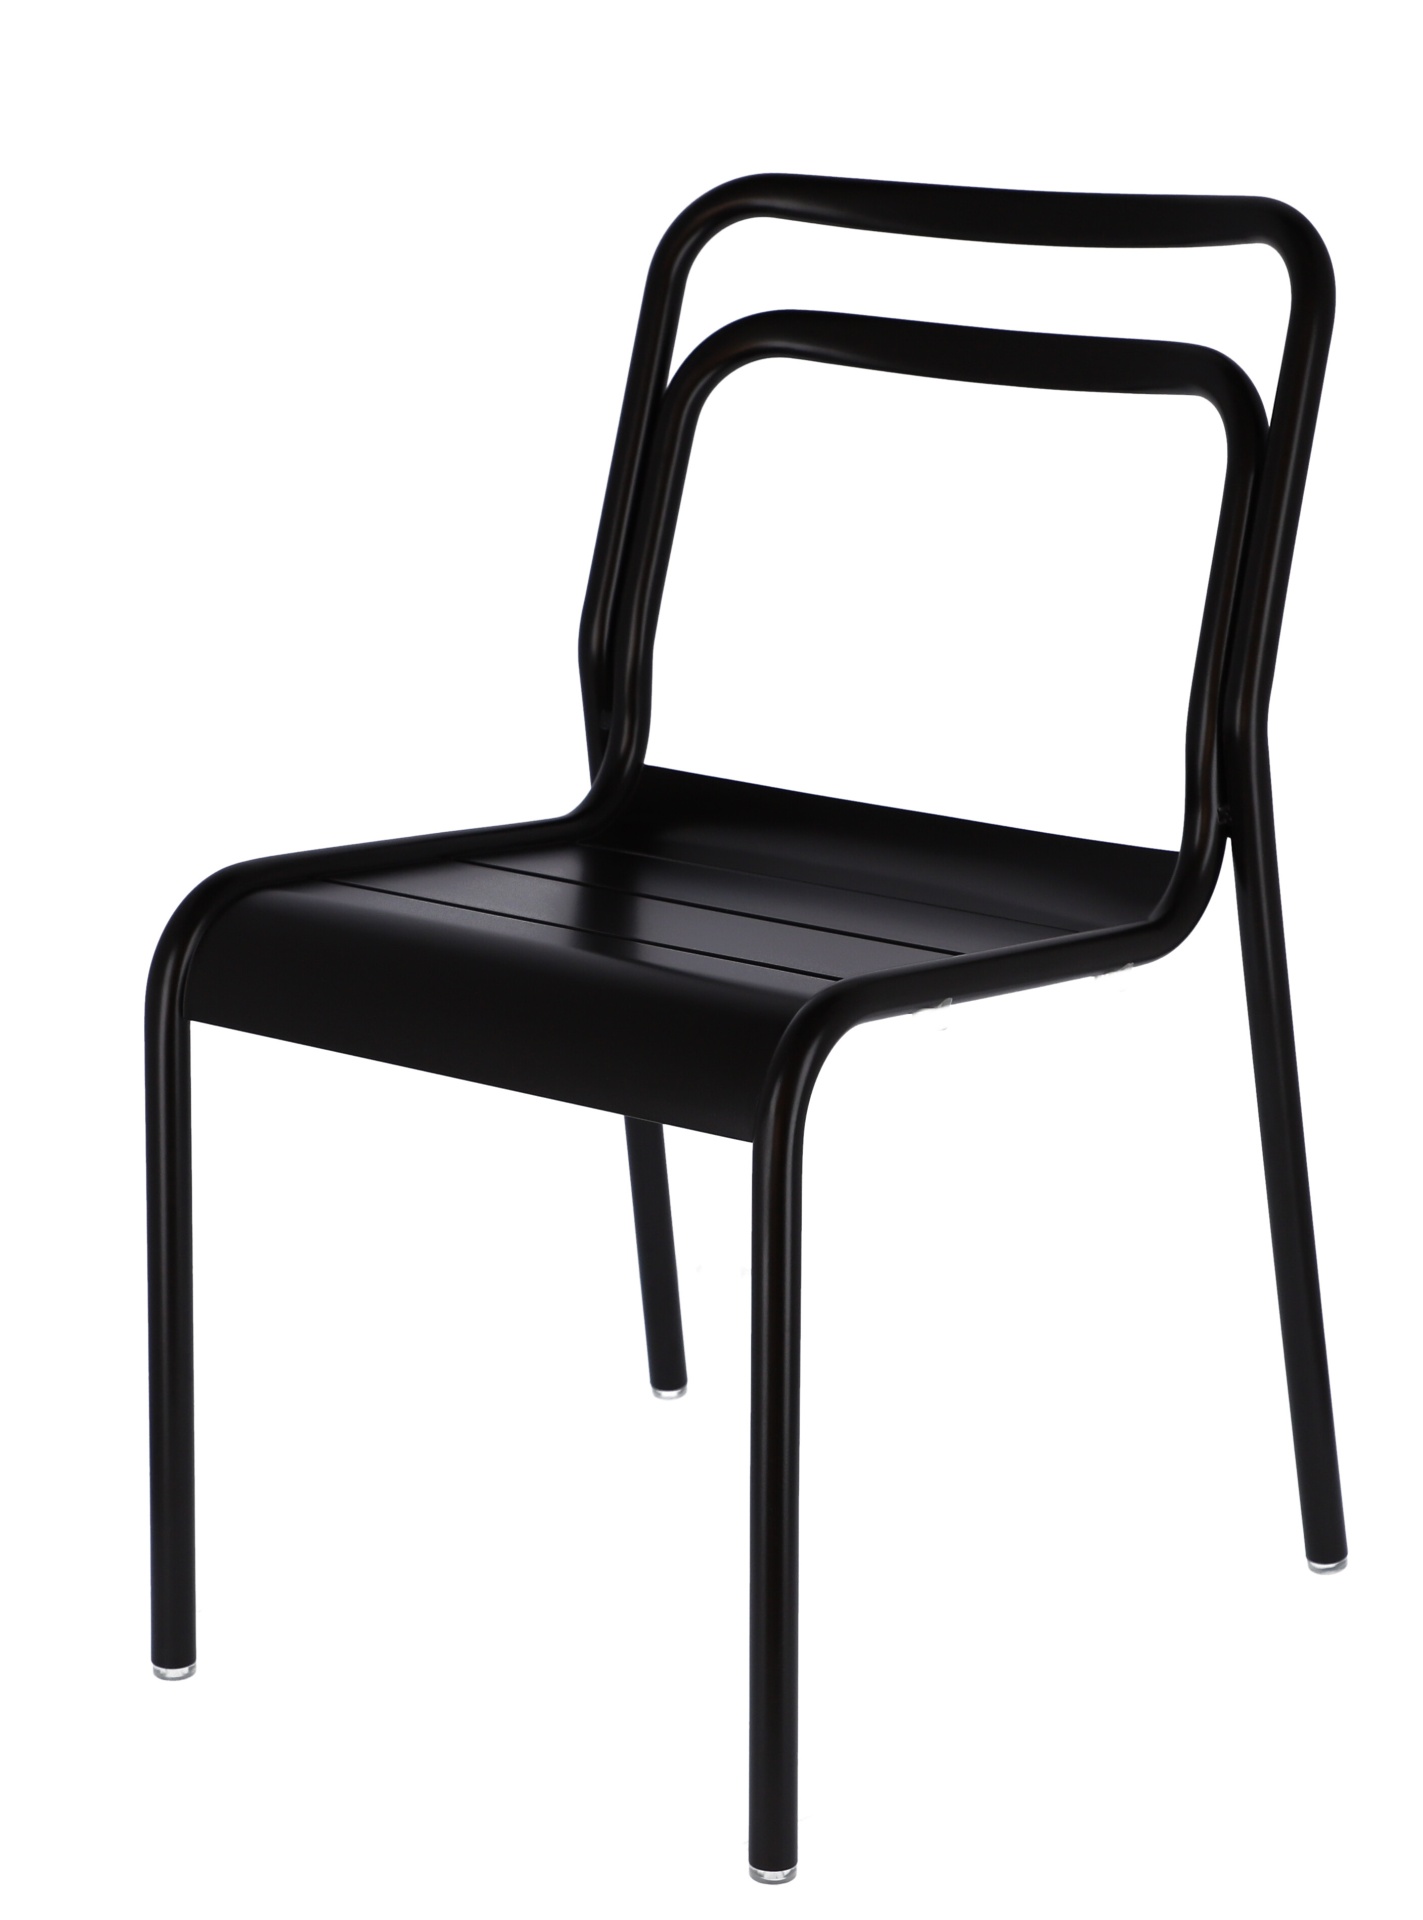 Der moderne Gartenstuhl Live wurde aus Aluminium hergestellt. Designet wurde er von der Marke Jan Kurtz. Die Farbe des Stuhls ist Schwarz.